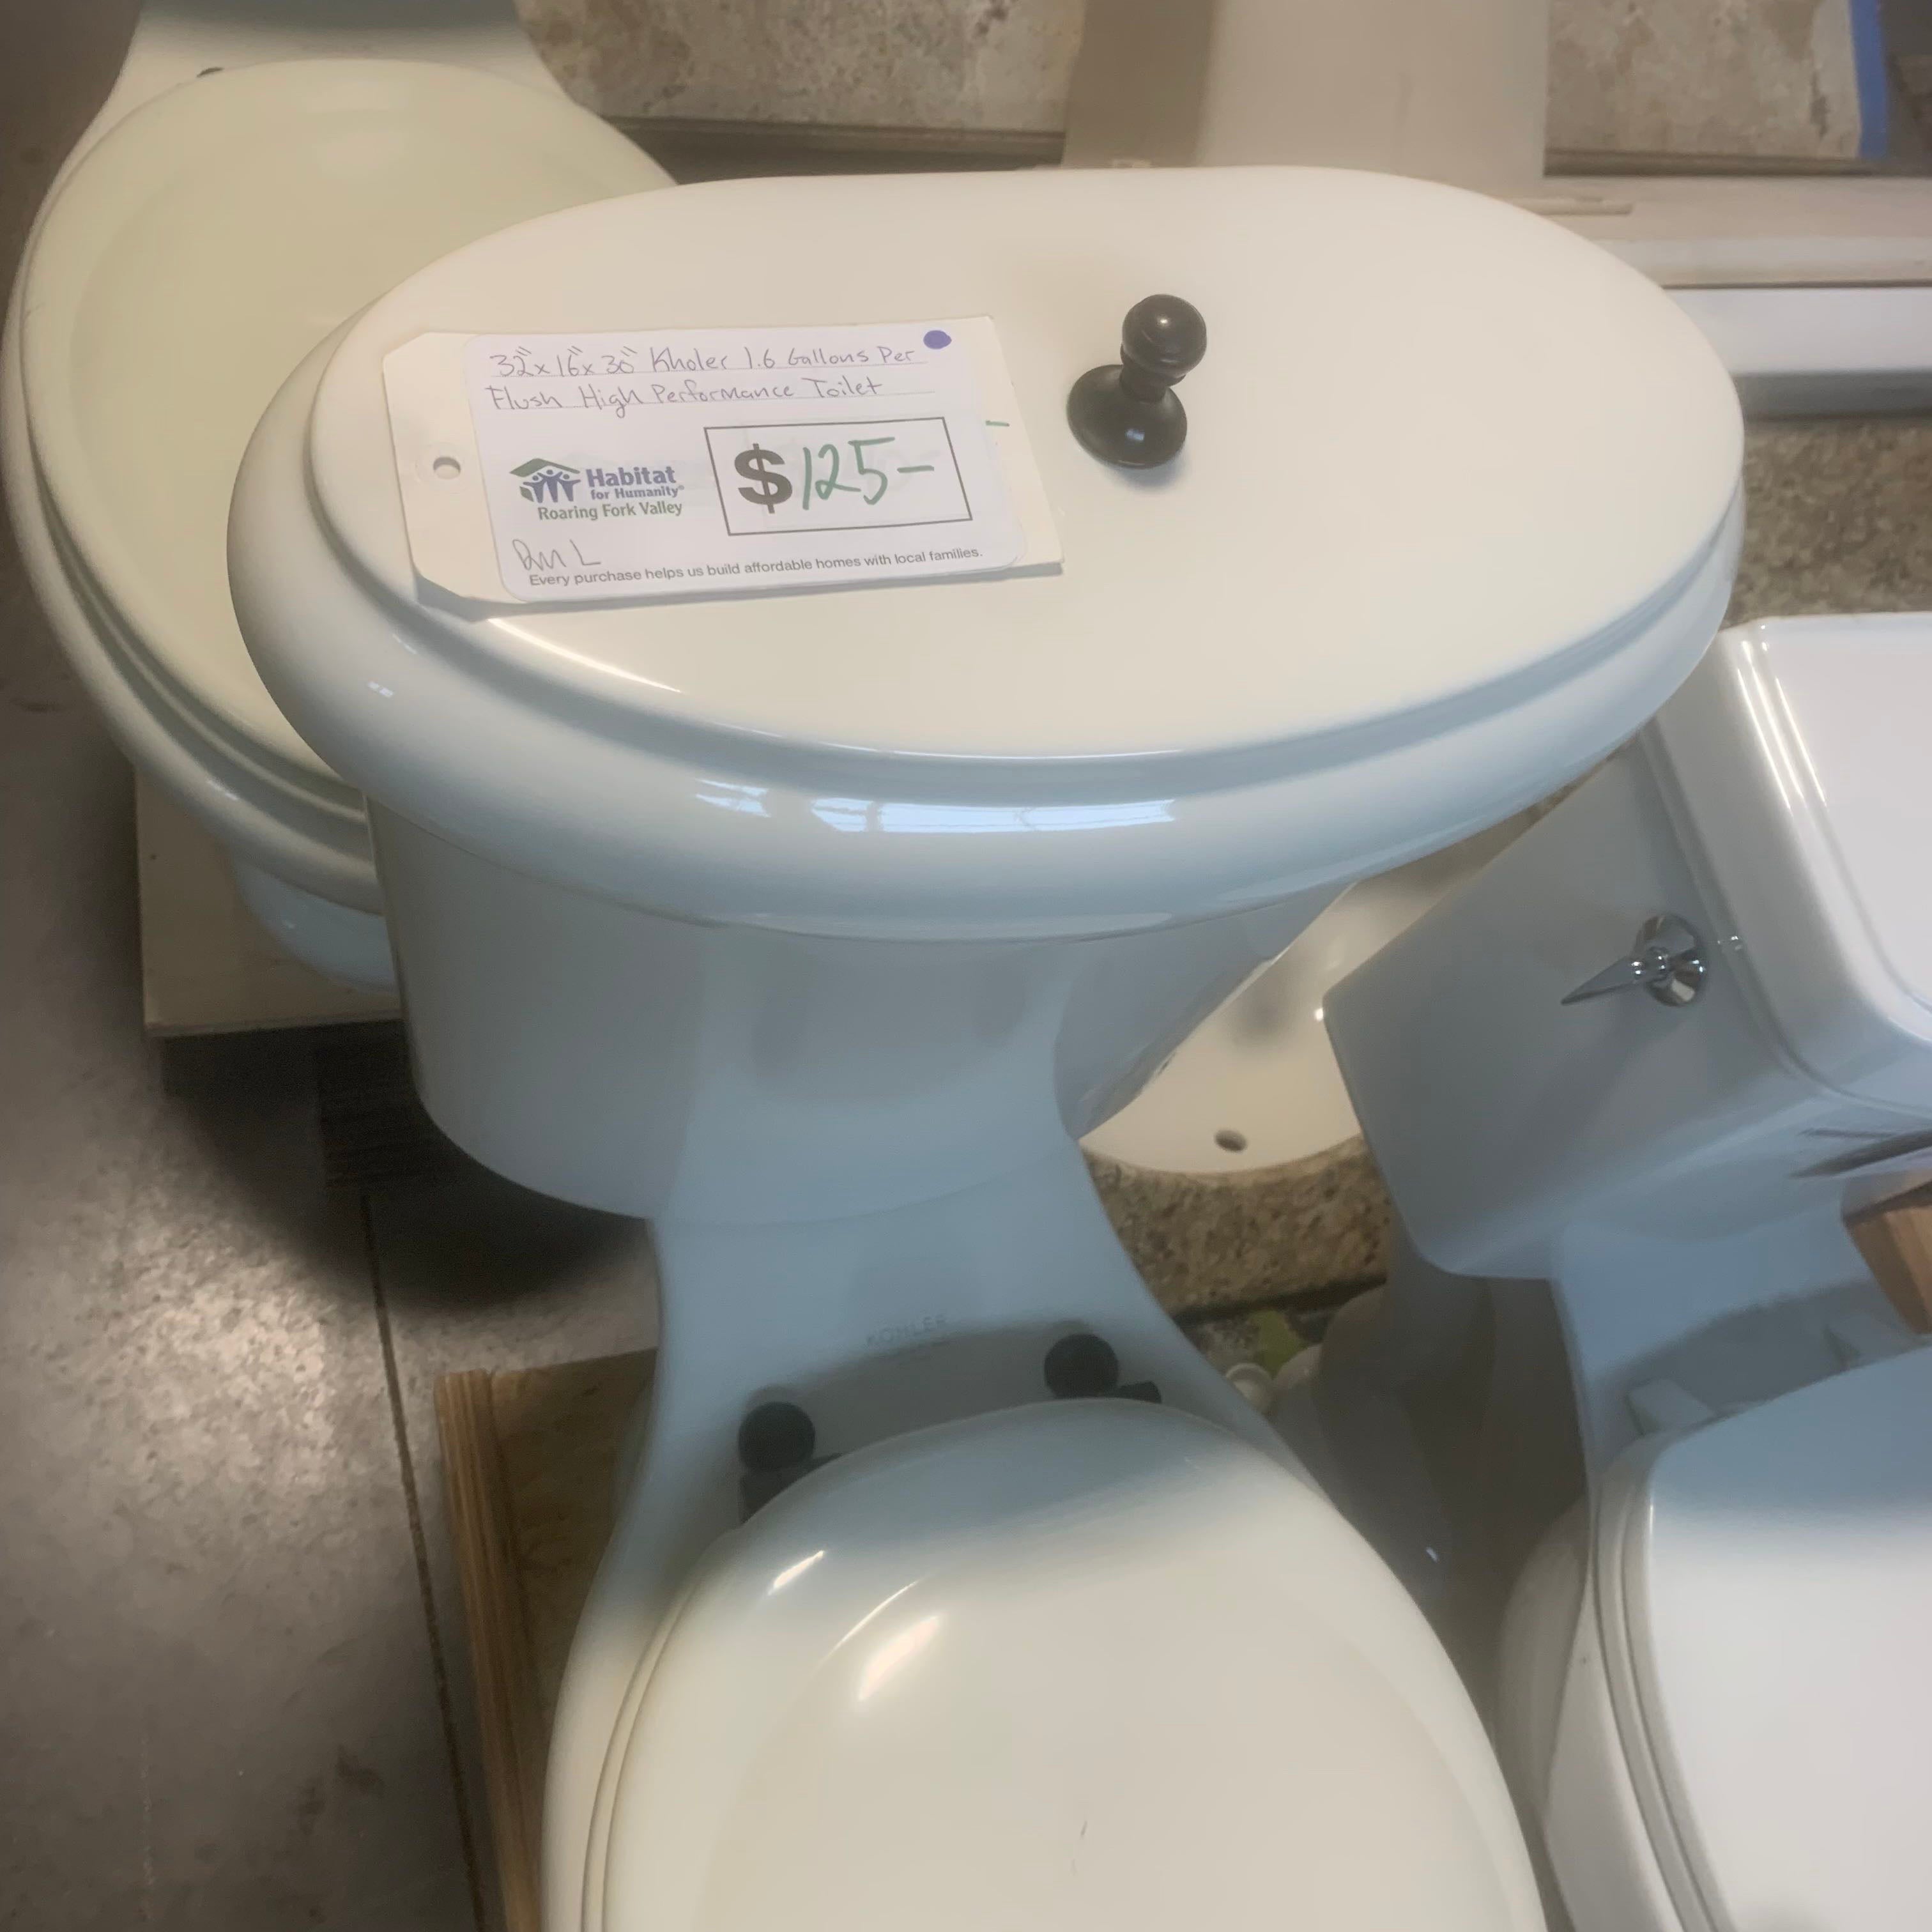 Kohler 1.6 Gallons Per Flush High Performance Toilet